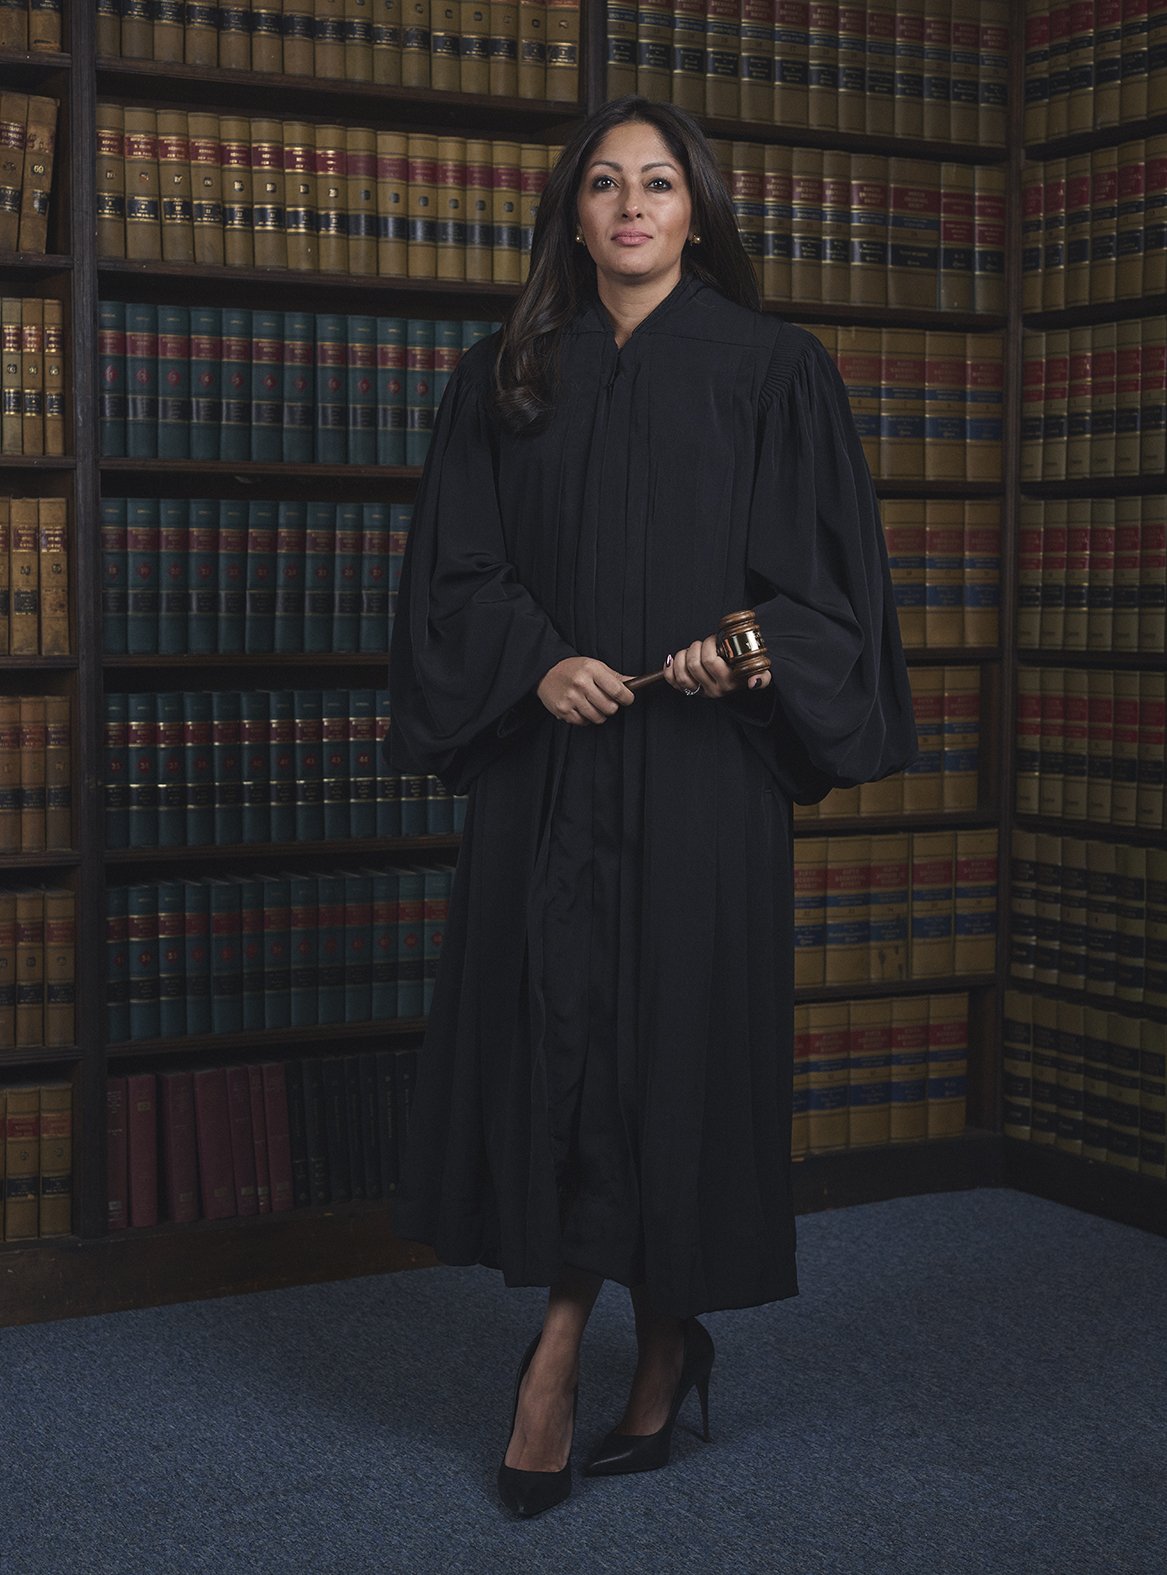 Brooklyn Civil Court Judge Rena Malik